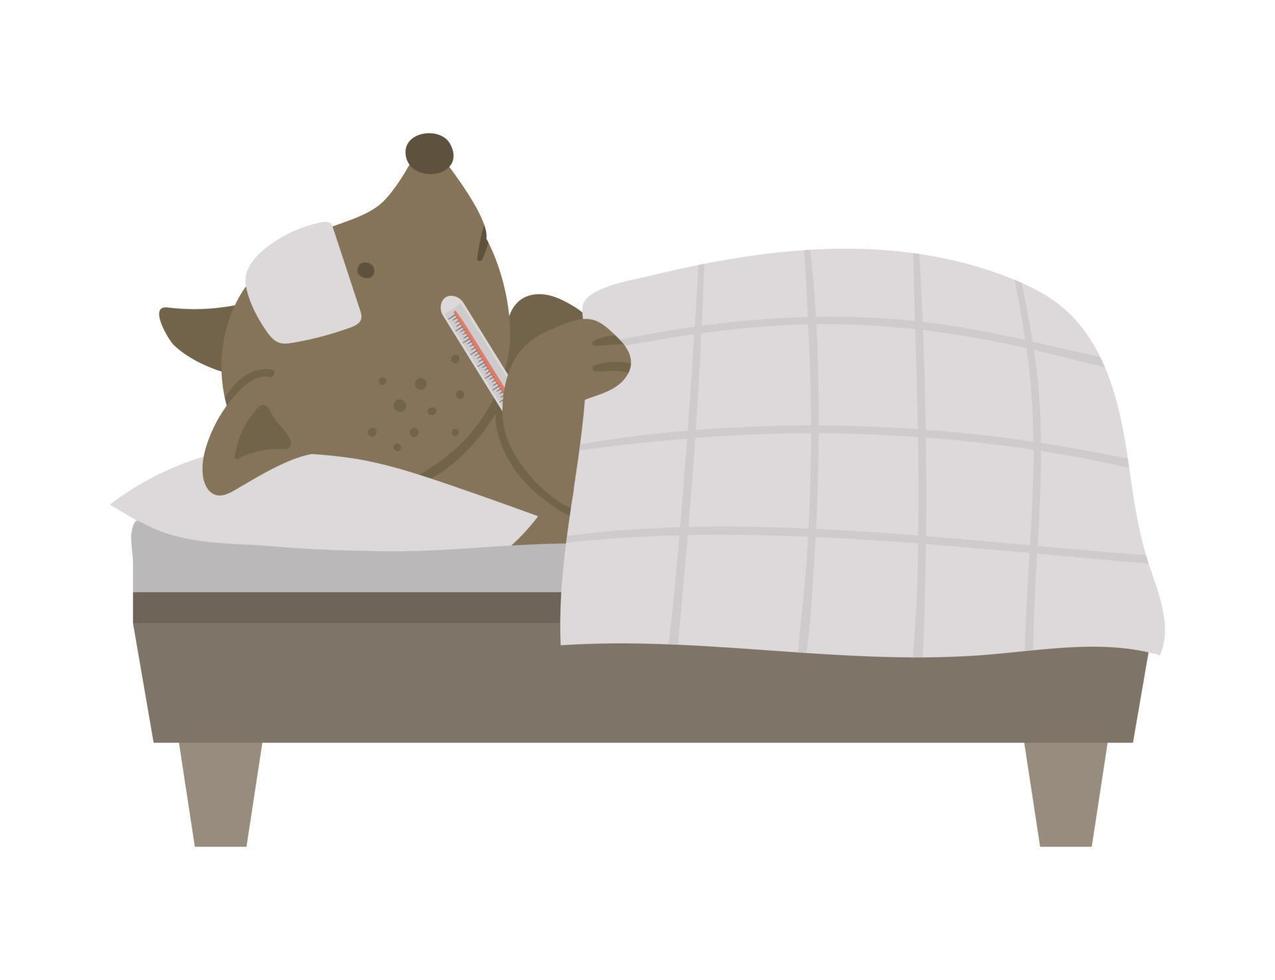 vector ziek dier in bed. schattige hond met thermometer met koorts. grappig ziekenhuispatiëntkarakter. medische illustratie voor kinderen.